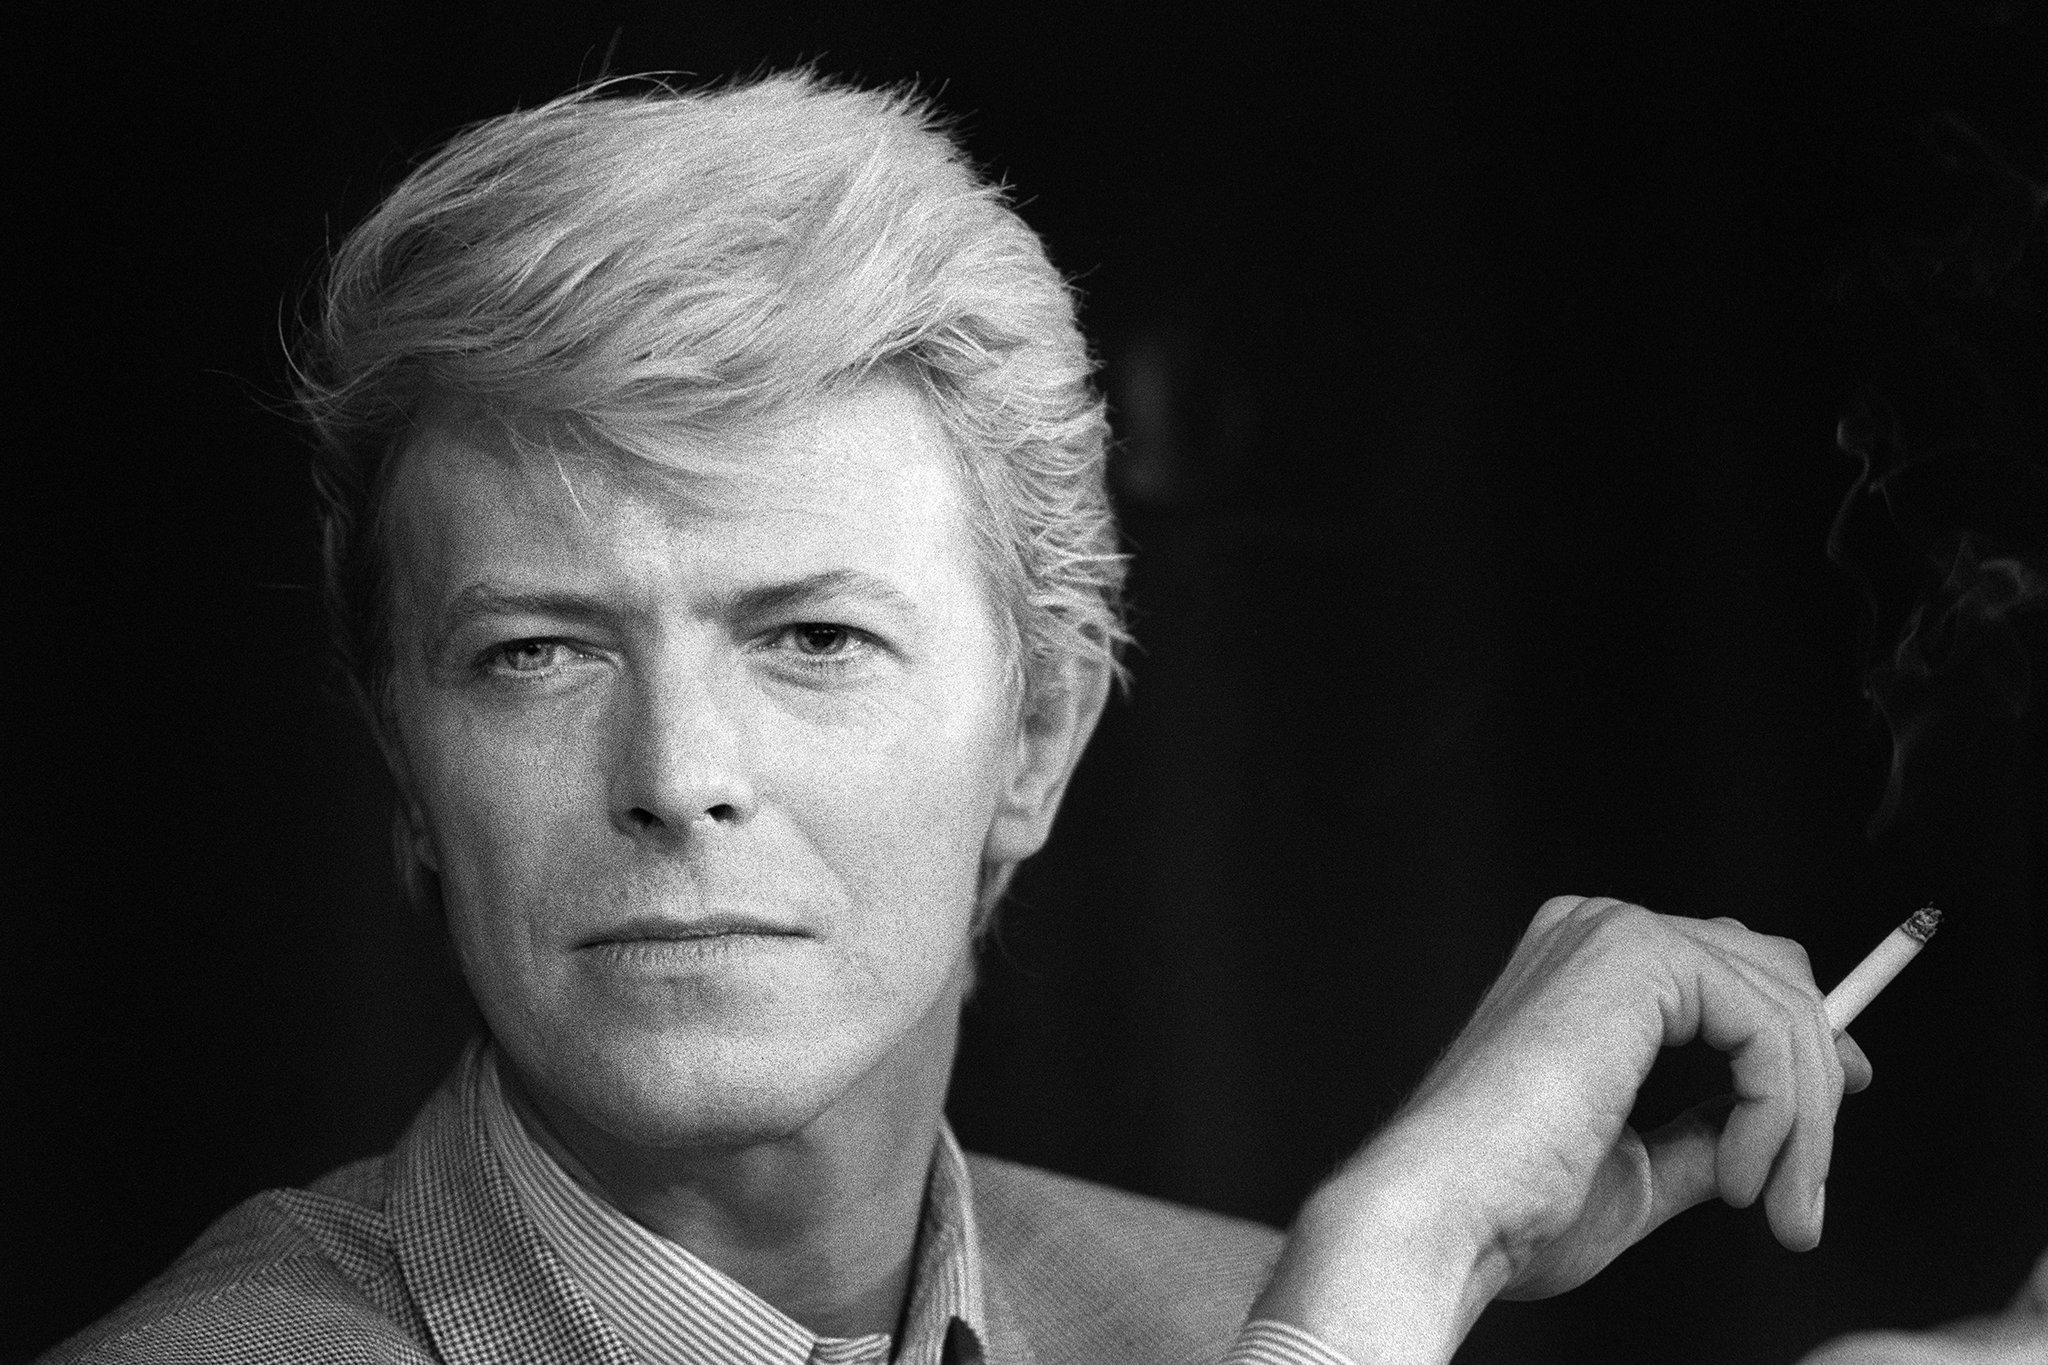 英国歌手、词曲作者、音乐家和演员David Bowie(大卫·鲍伊)1969-2021年发行专辑、精选辑、现场辑合集[无损FLAC/62.8GB]百度云盘打包下载 影音资源 第1张